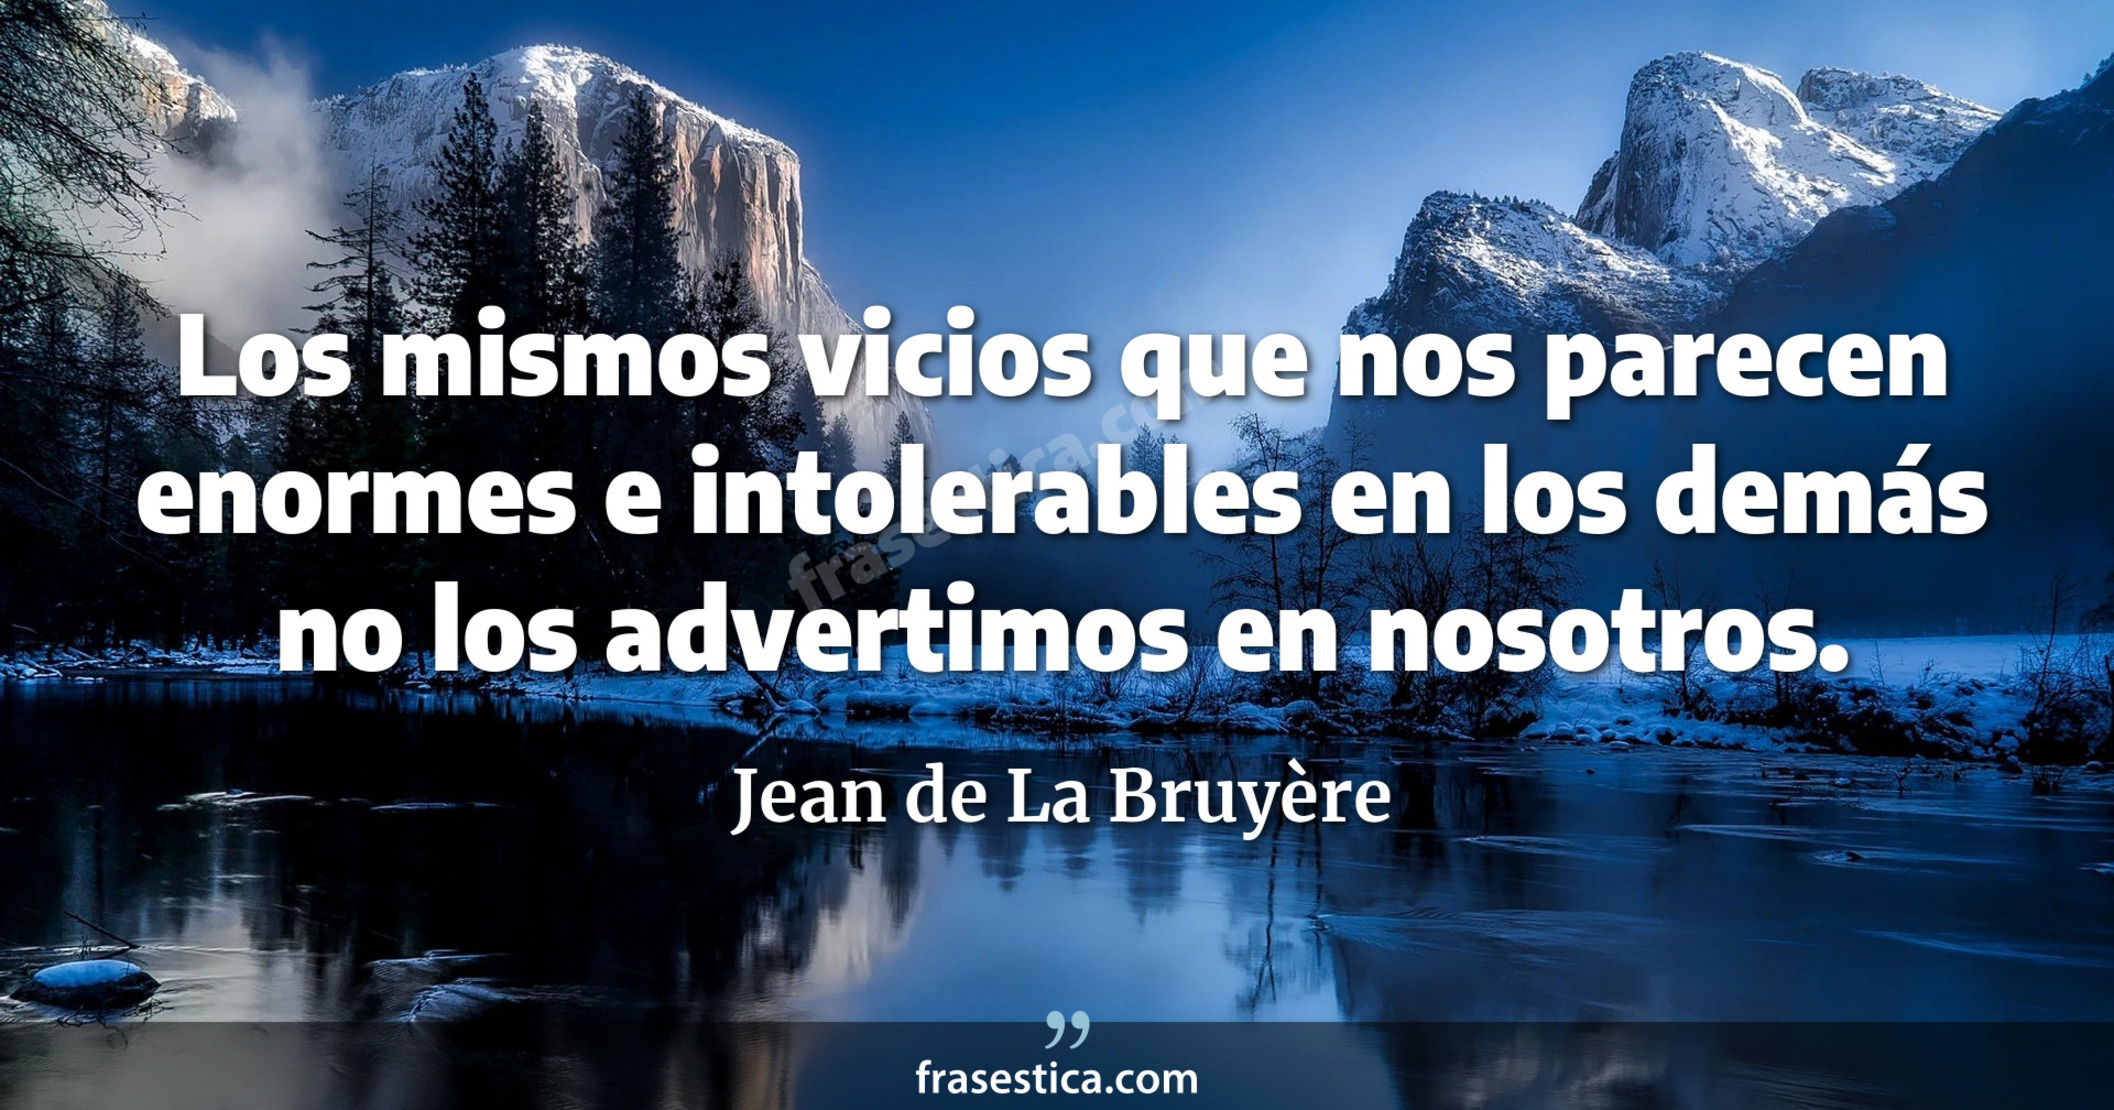 Los mismos vicios que nos parecen enormes e intolerables en los demás no los advertimos en nosotros. - Jean de La Bruyère